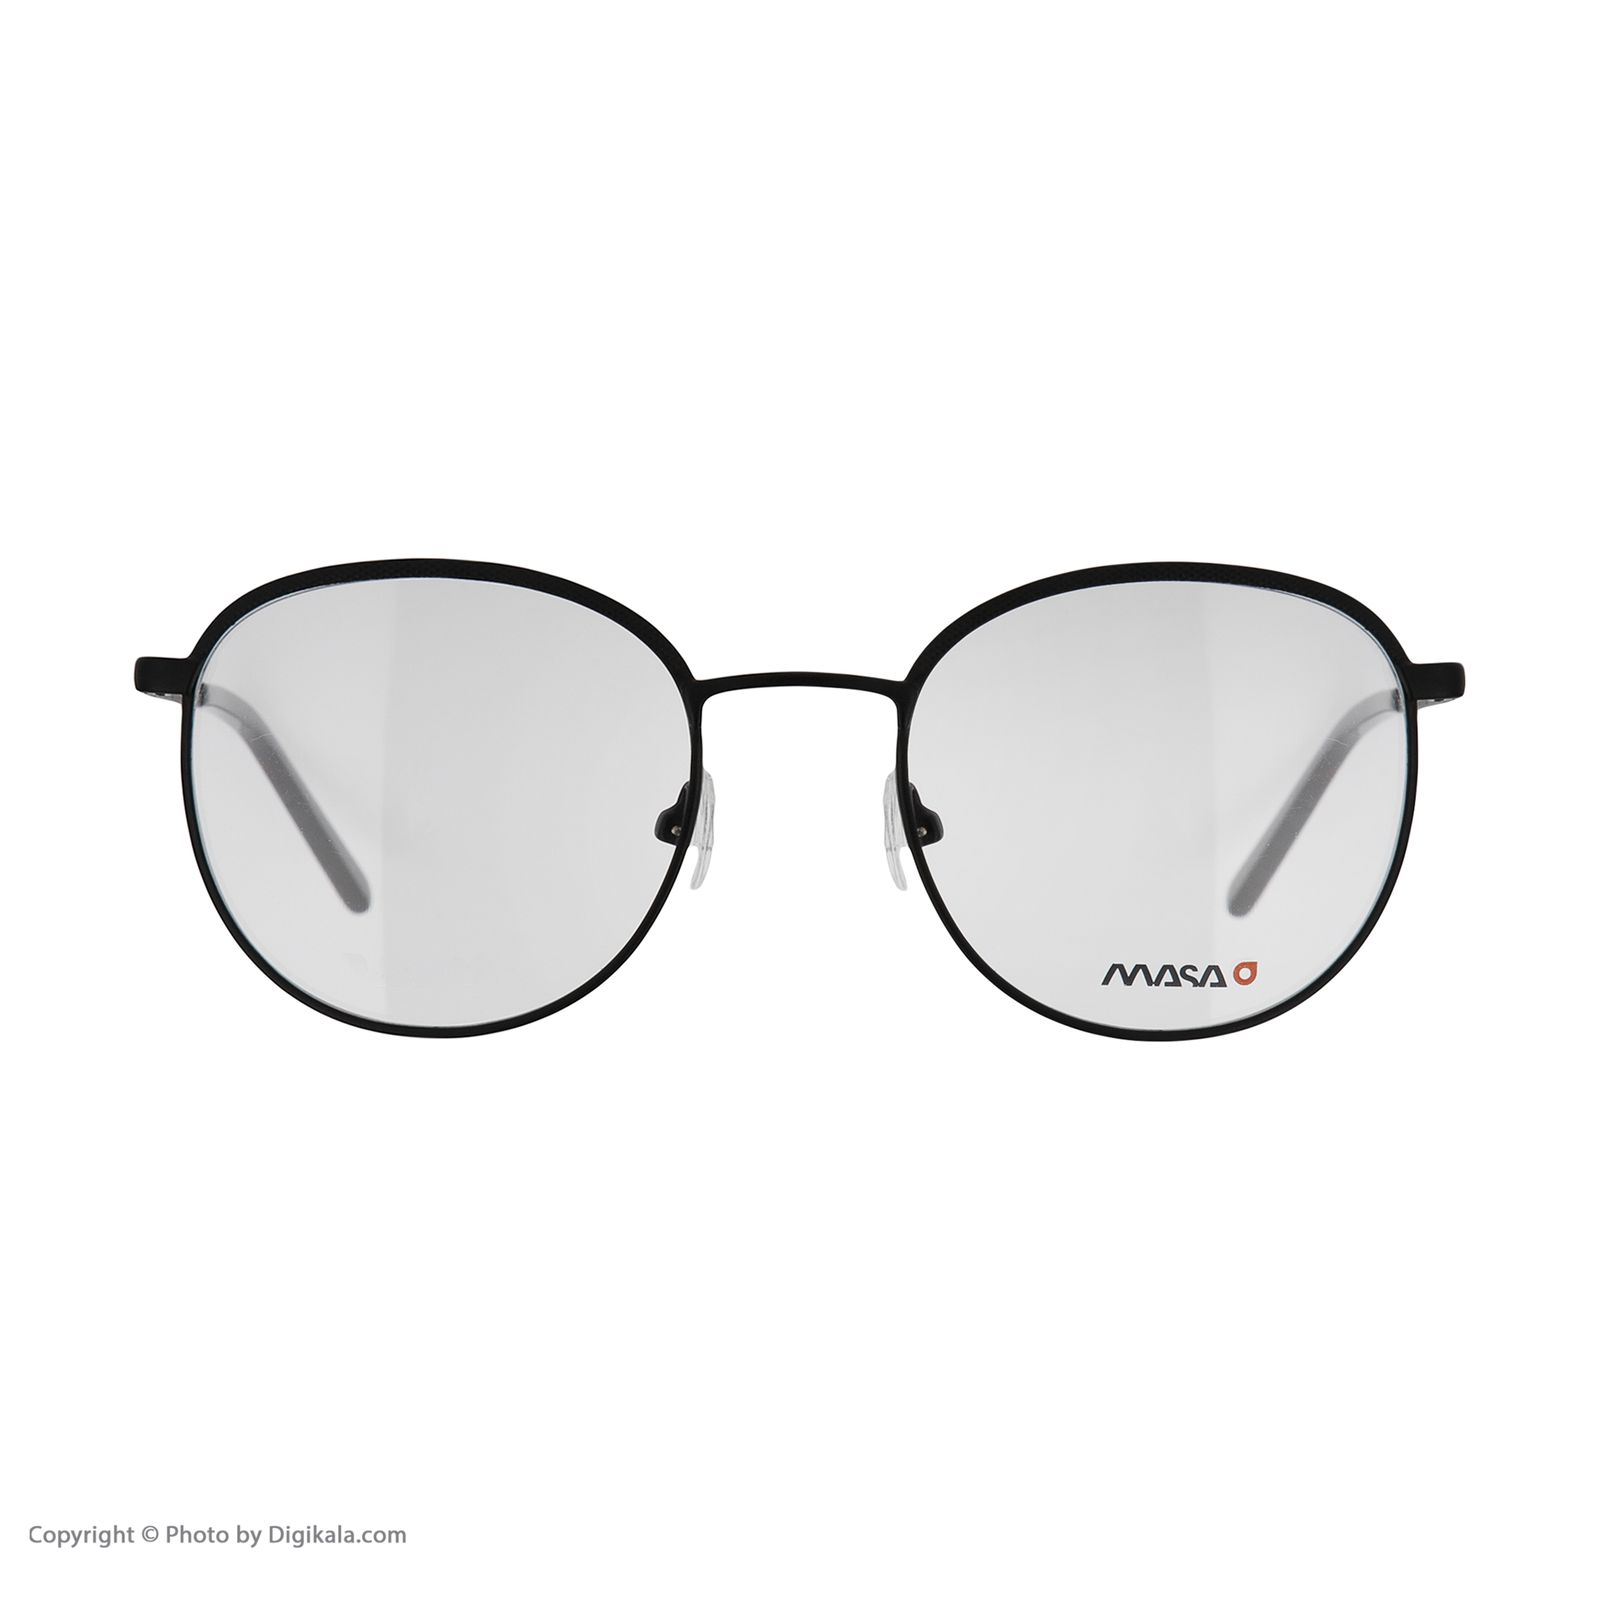 فریم عینک طبی ماسائو مدل 13191-115 -  - 4